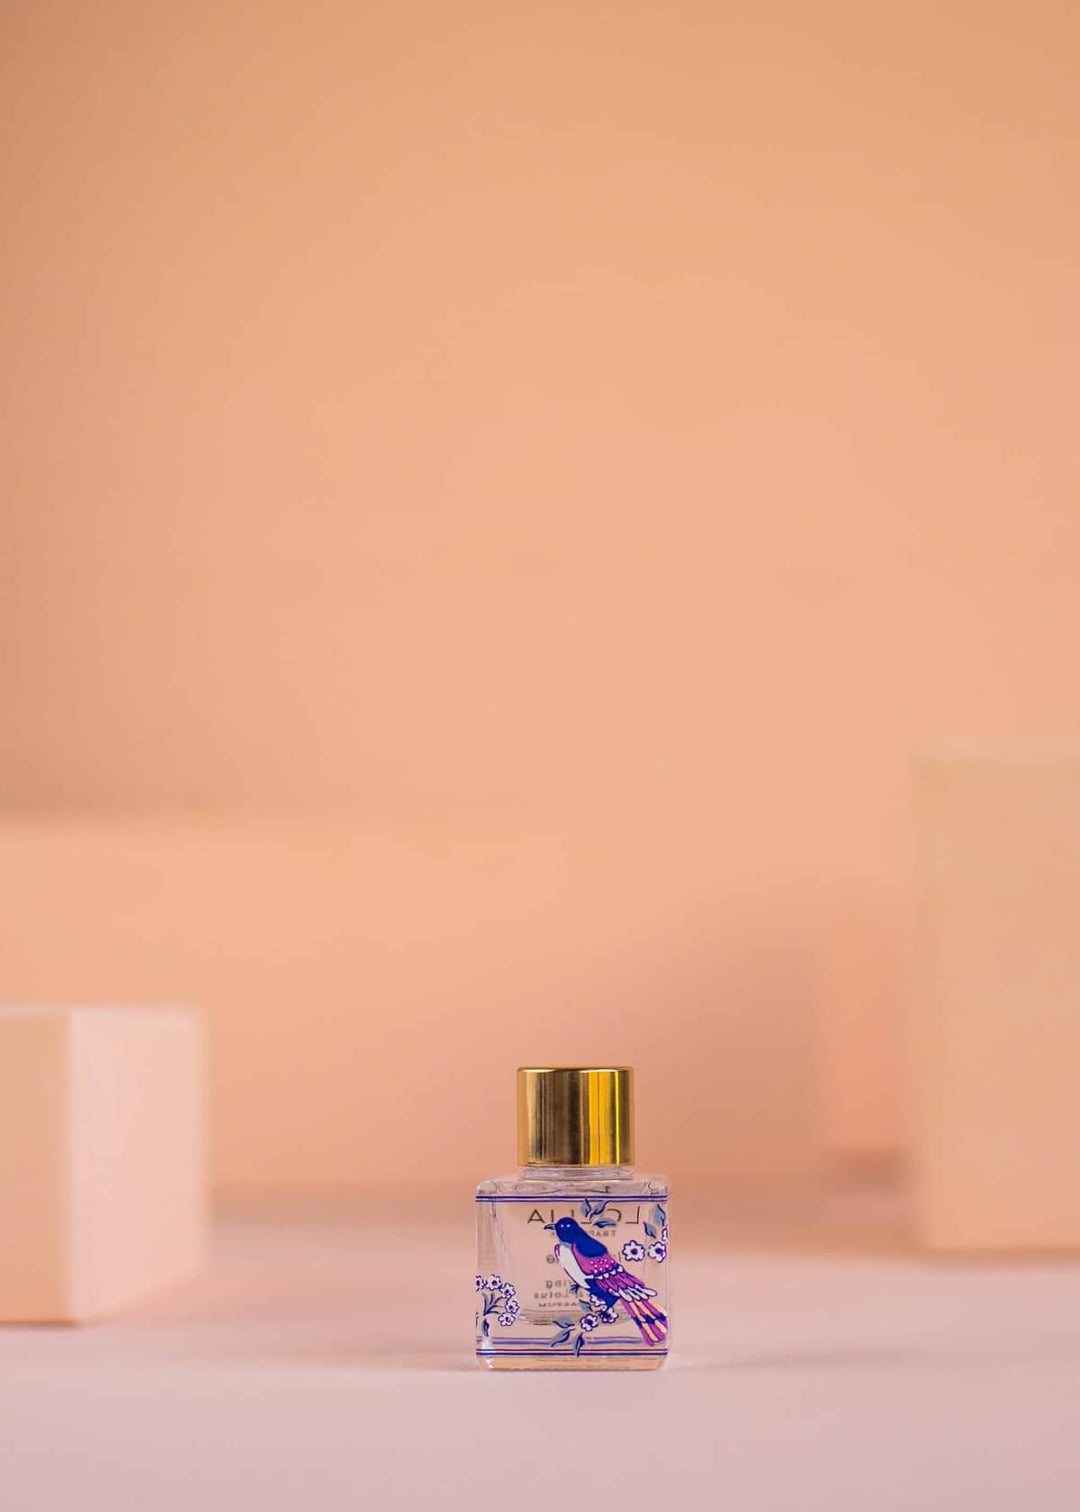 Louis Vuitton Miniature Set Fragrance, Beauty & Personal Care